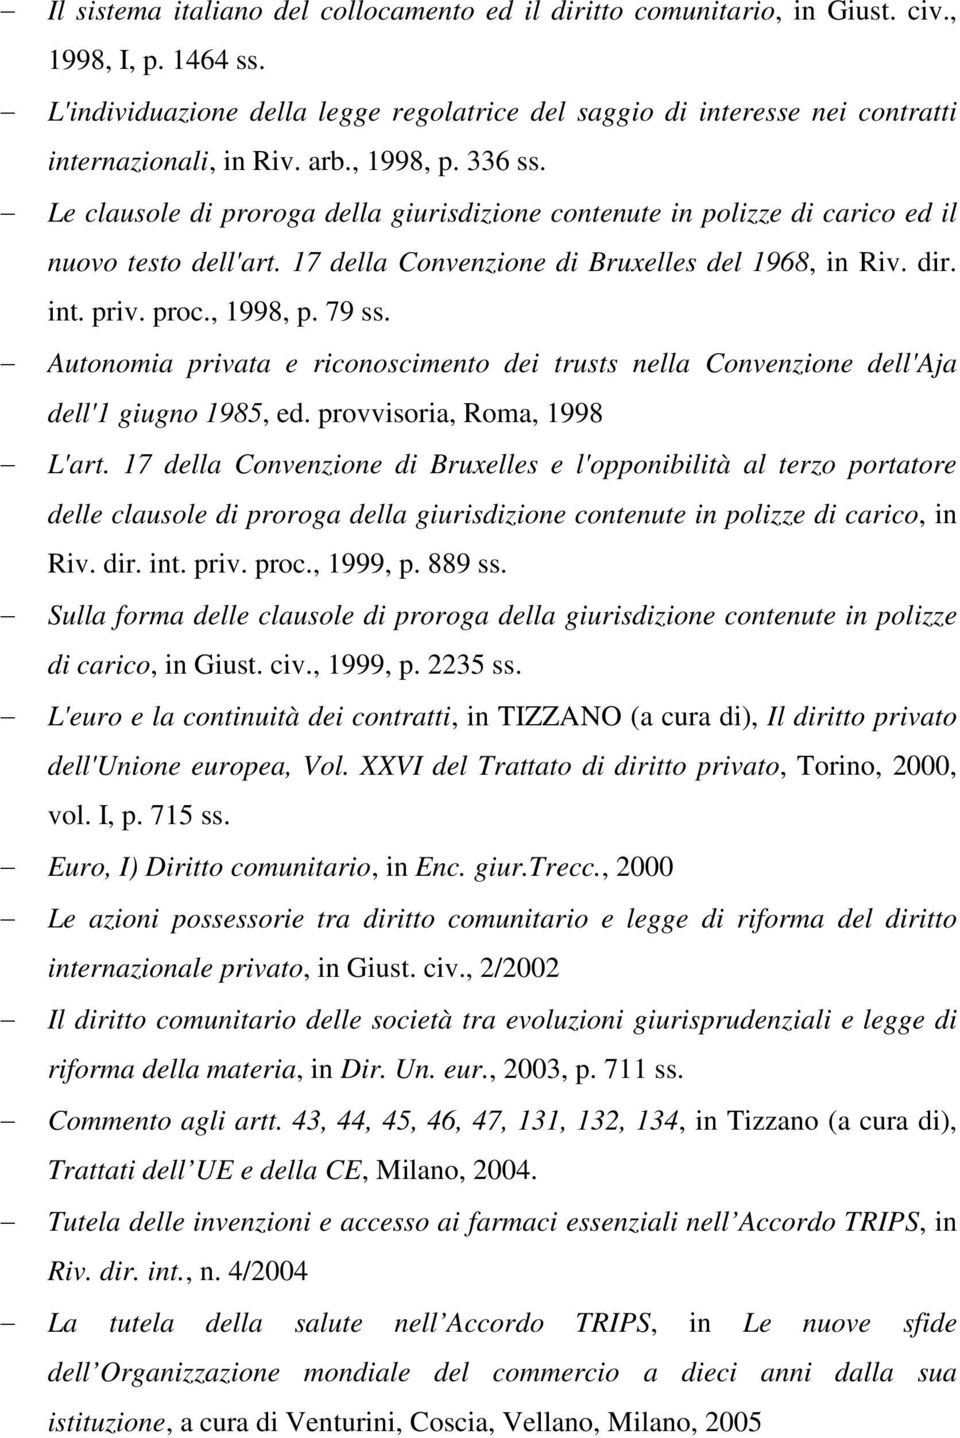 Le clausole di proroga della giurisdizione contenute in polizze di carico ed il nuovo testo dell'art. 17 della Convenzione di Bruxelles del 1968, in Riv. dir. int. priv. proc., 1998, p. 79 ss.